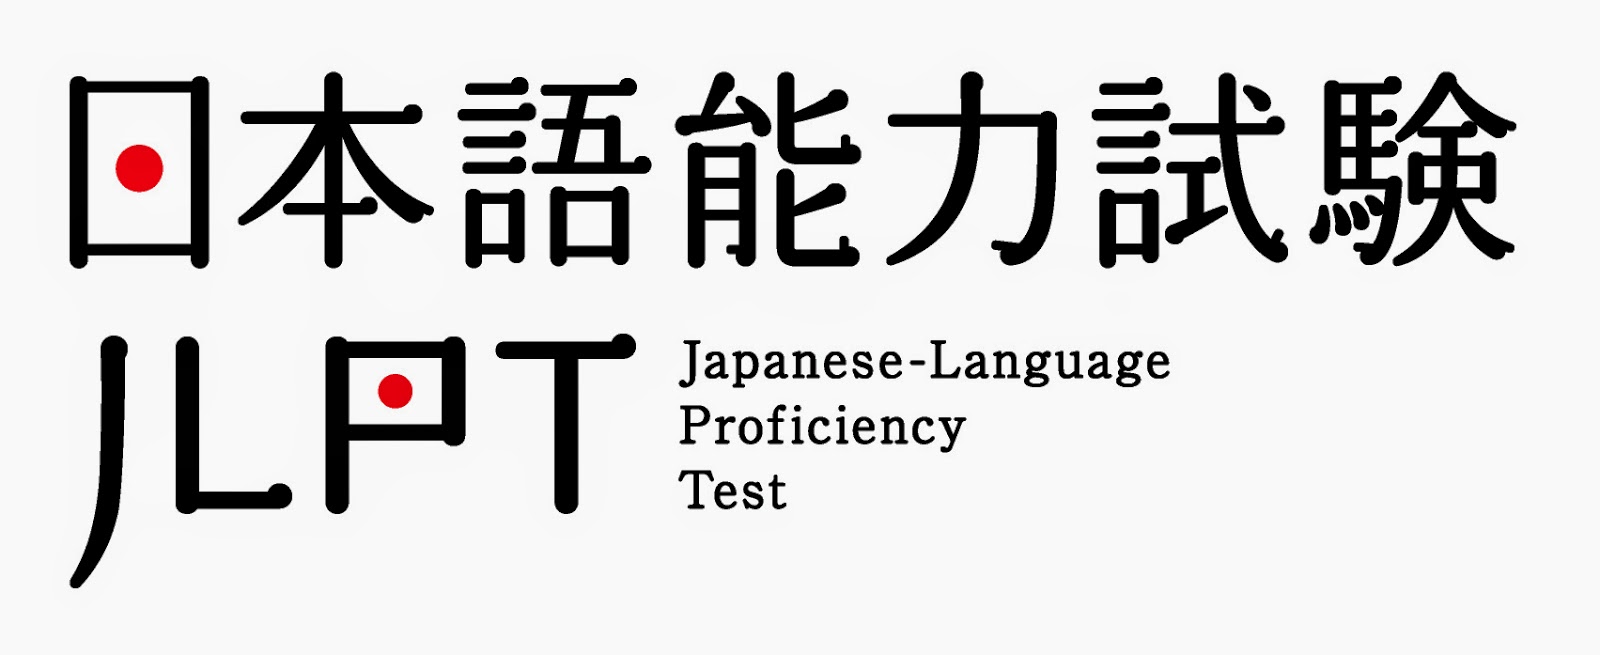 今天是JLPT日本语能力试验